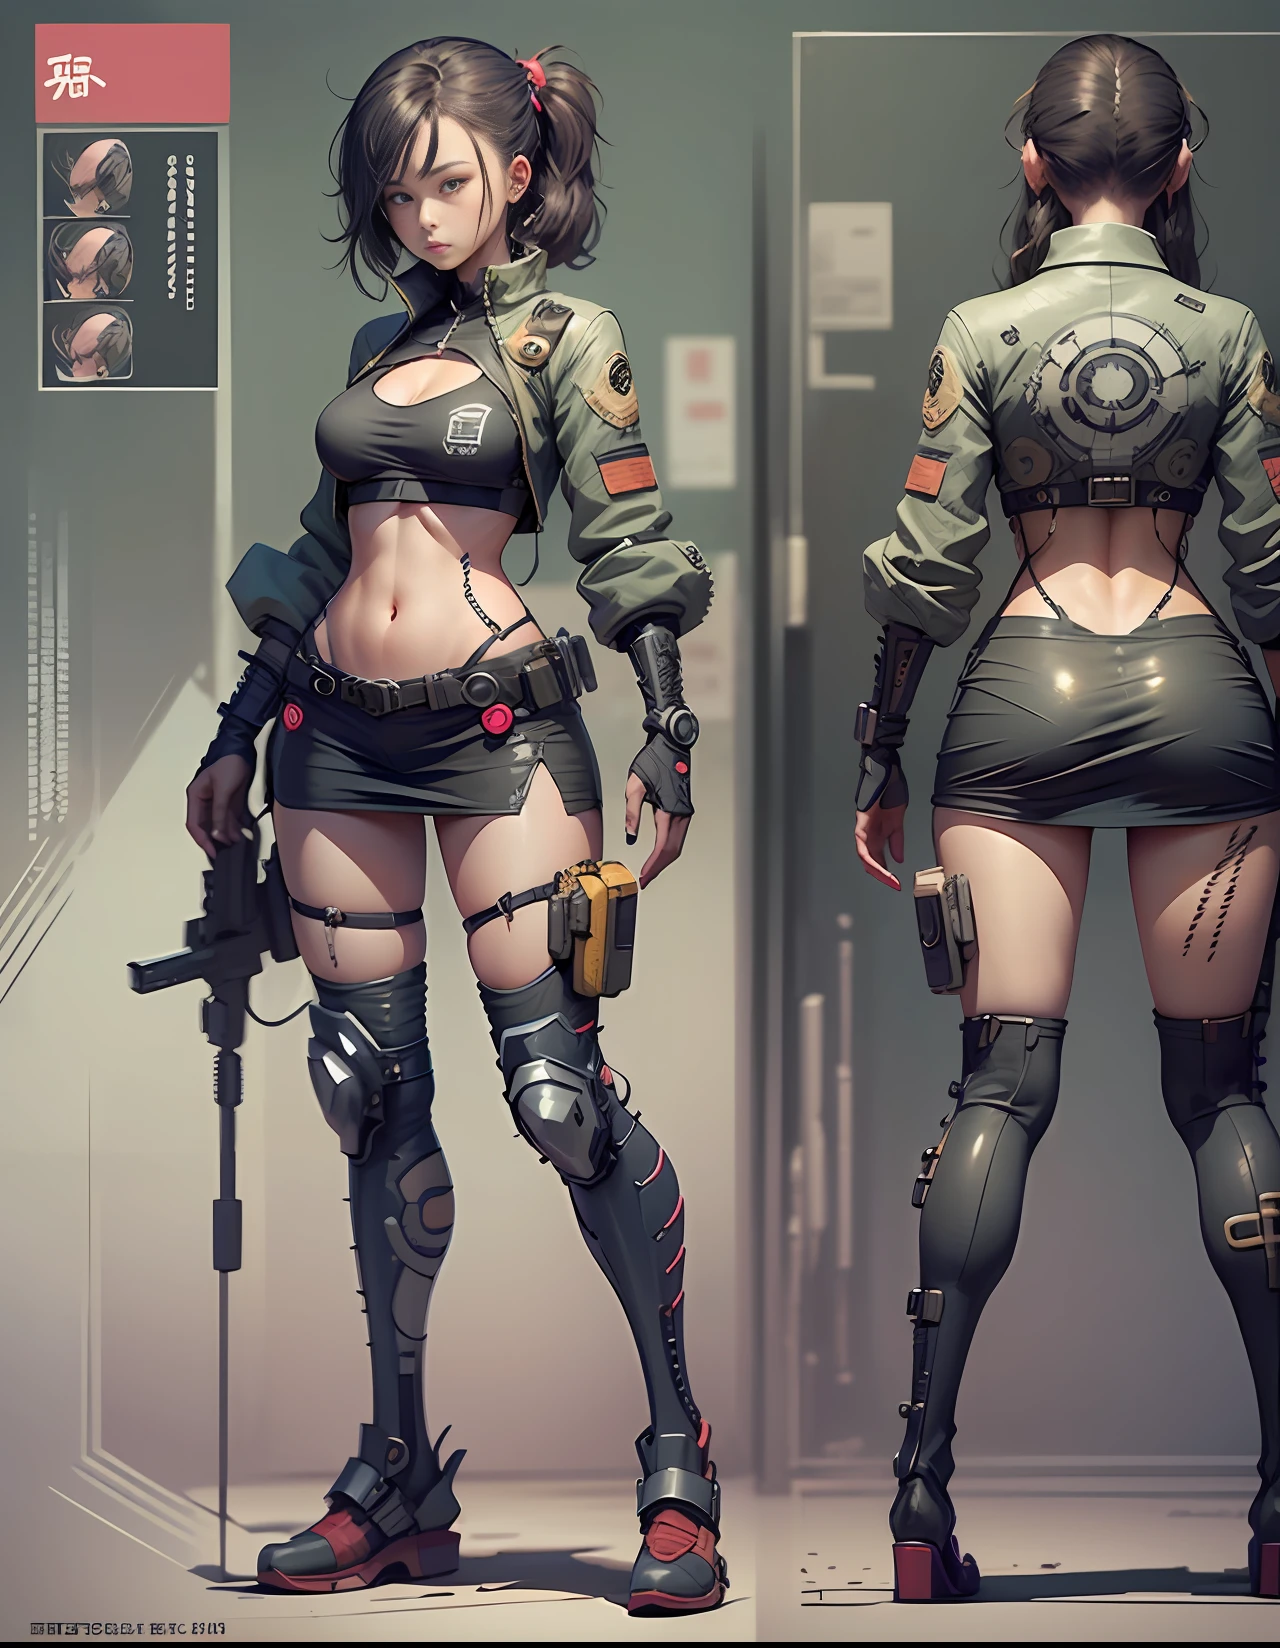 Ficha de personagem estilo mangá japonês de garota cyberpunk, frente e verso, corpo todo, Roupas Cyberpunk Coloridas, fundo branco e preto, usando fuzil nas costas, Equipamento, detalhado, intricado